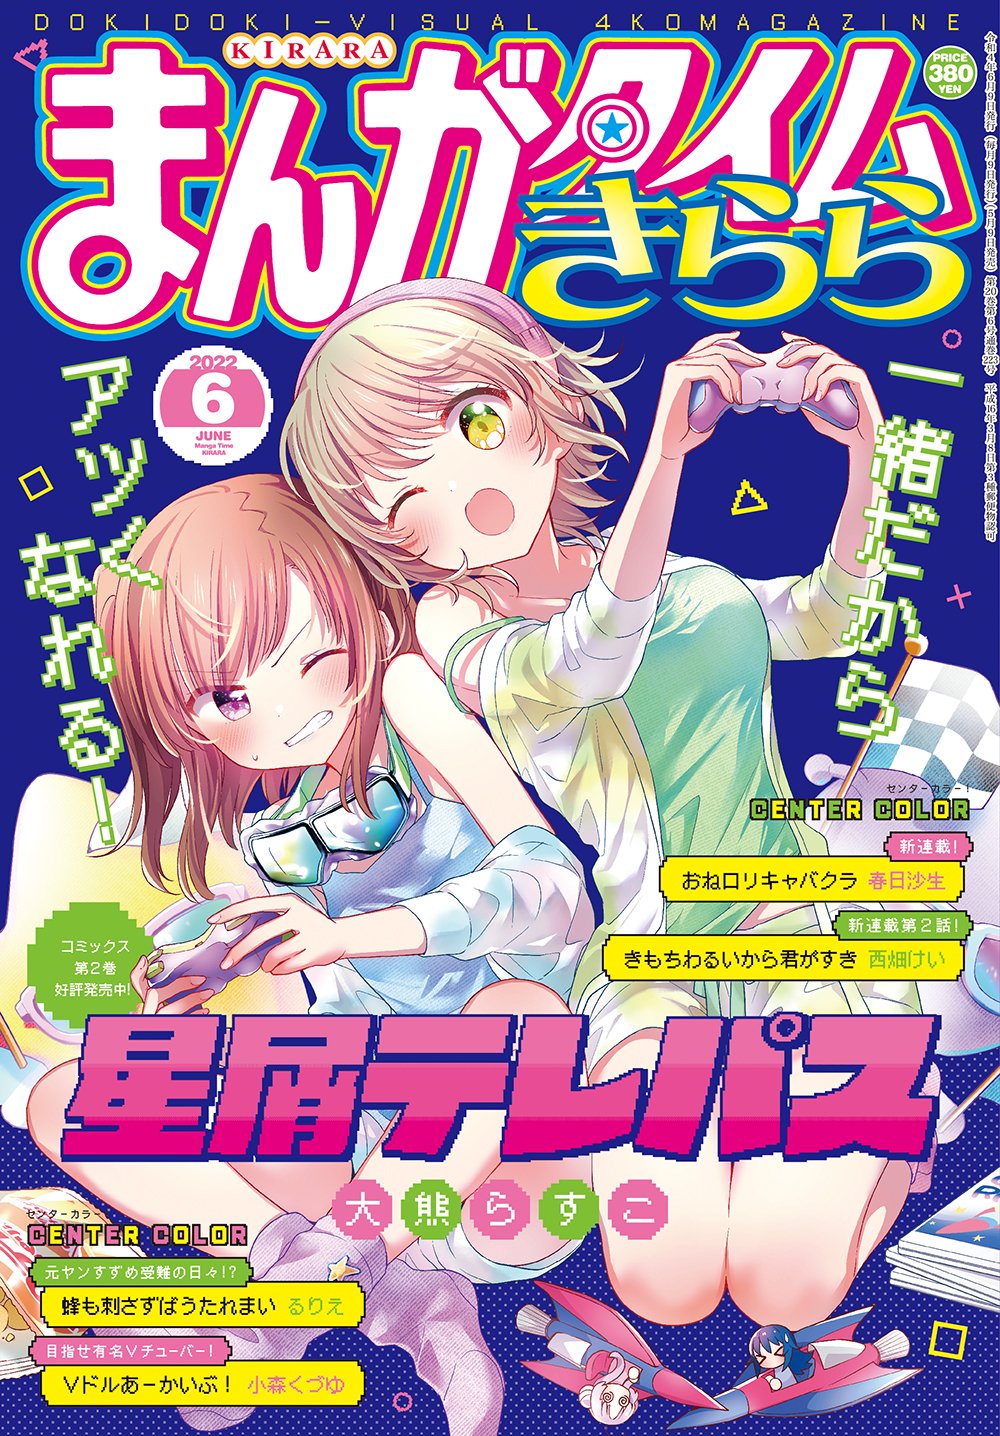 【杂志信息推送】Manga Time Kirara 2022年6月号